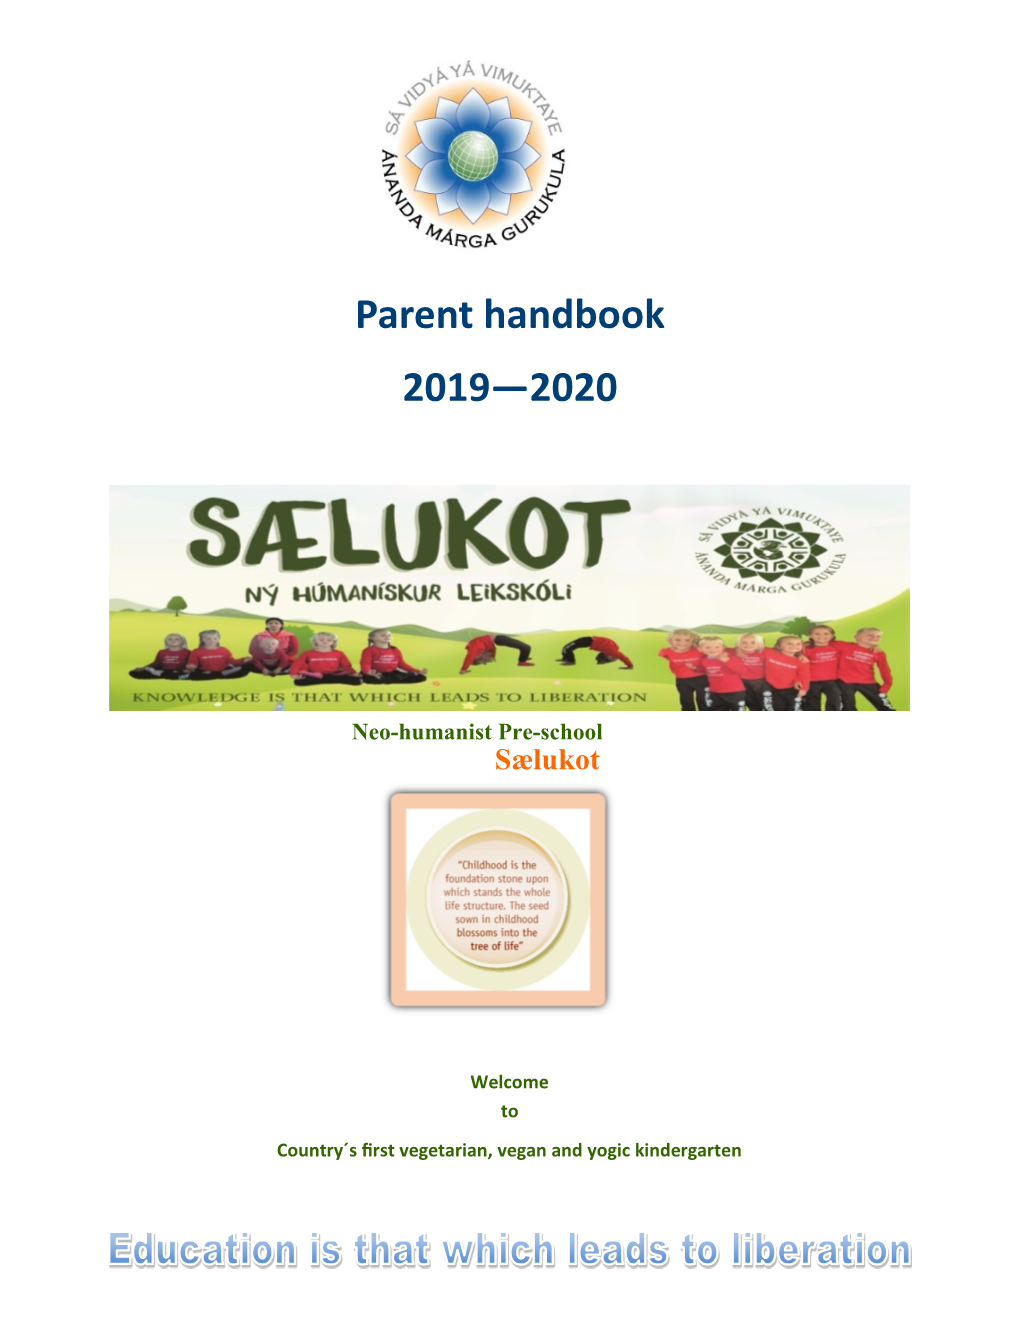 Parent Handbook 2019—2020